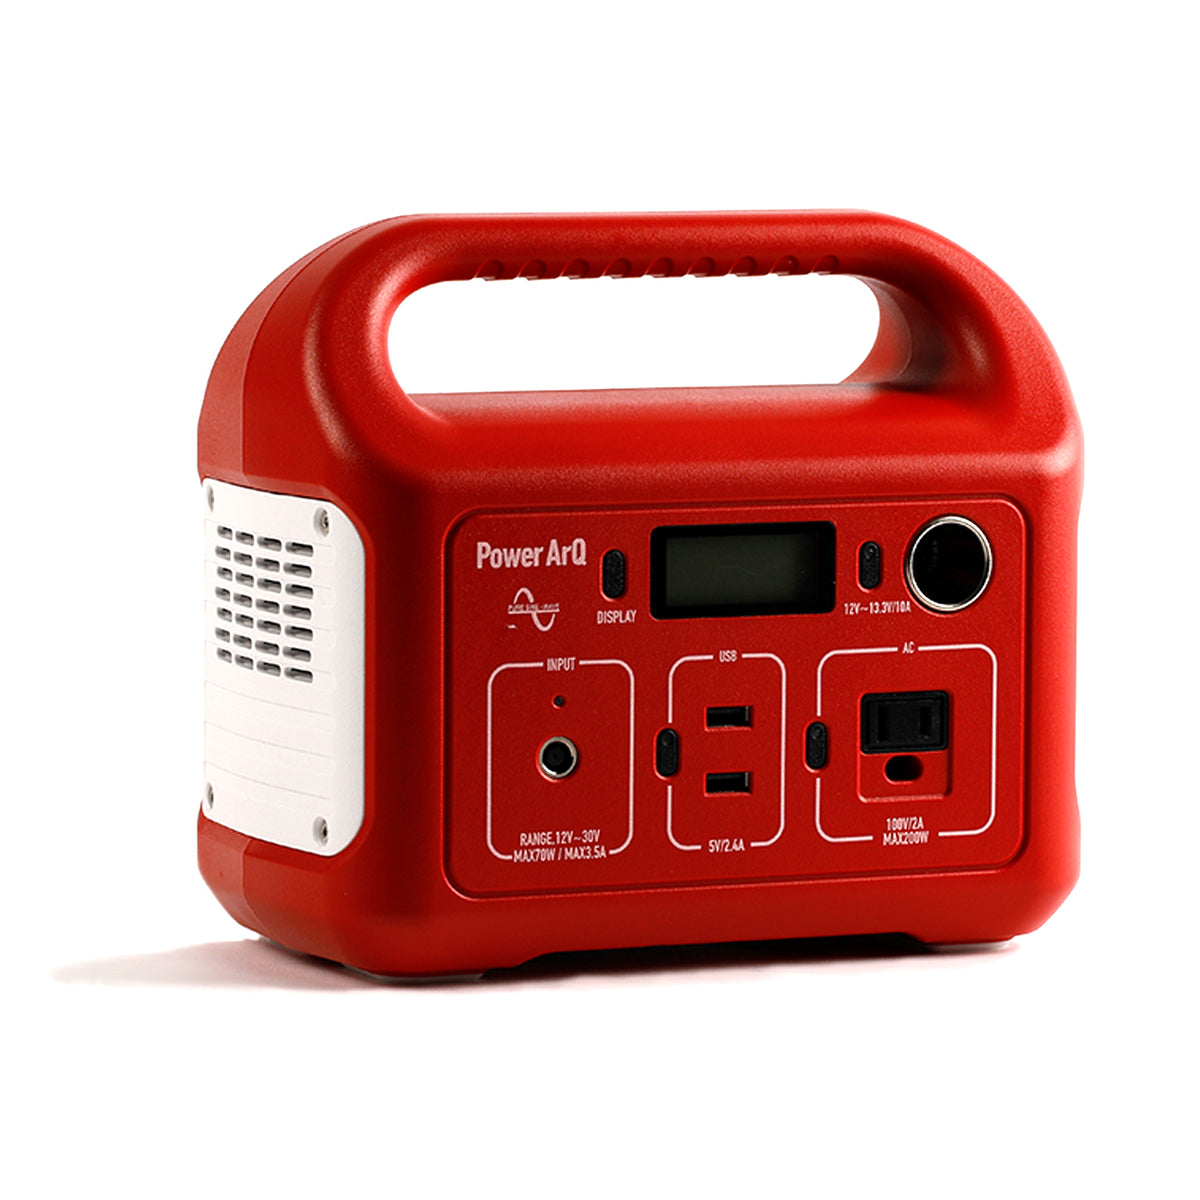 Smart Tap Power ArQ mini 2 red-